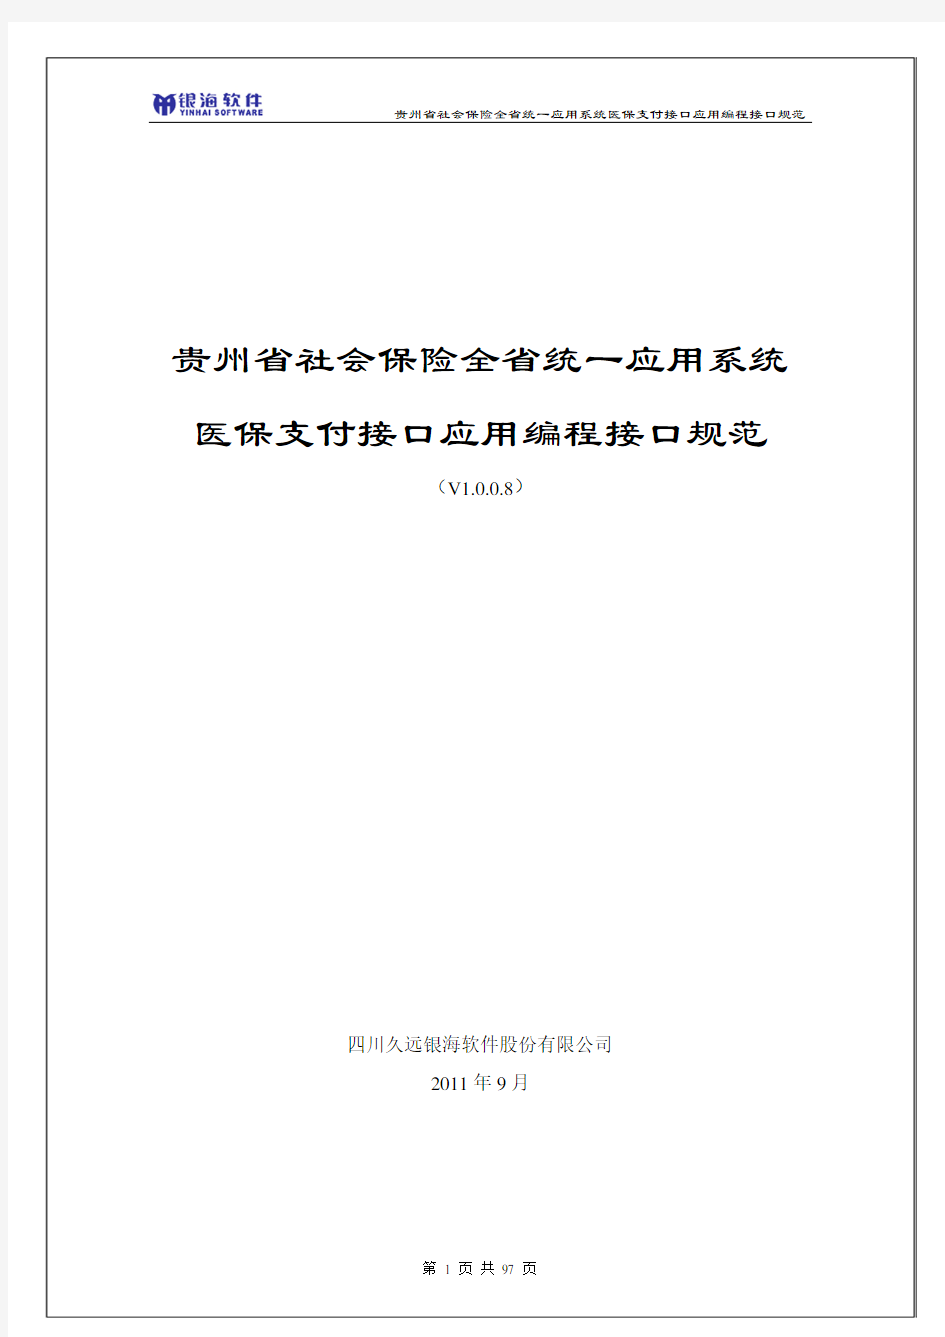 贵州省社会保险全省统一应用系统医保支付接口规范(V1.0.0.8)